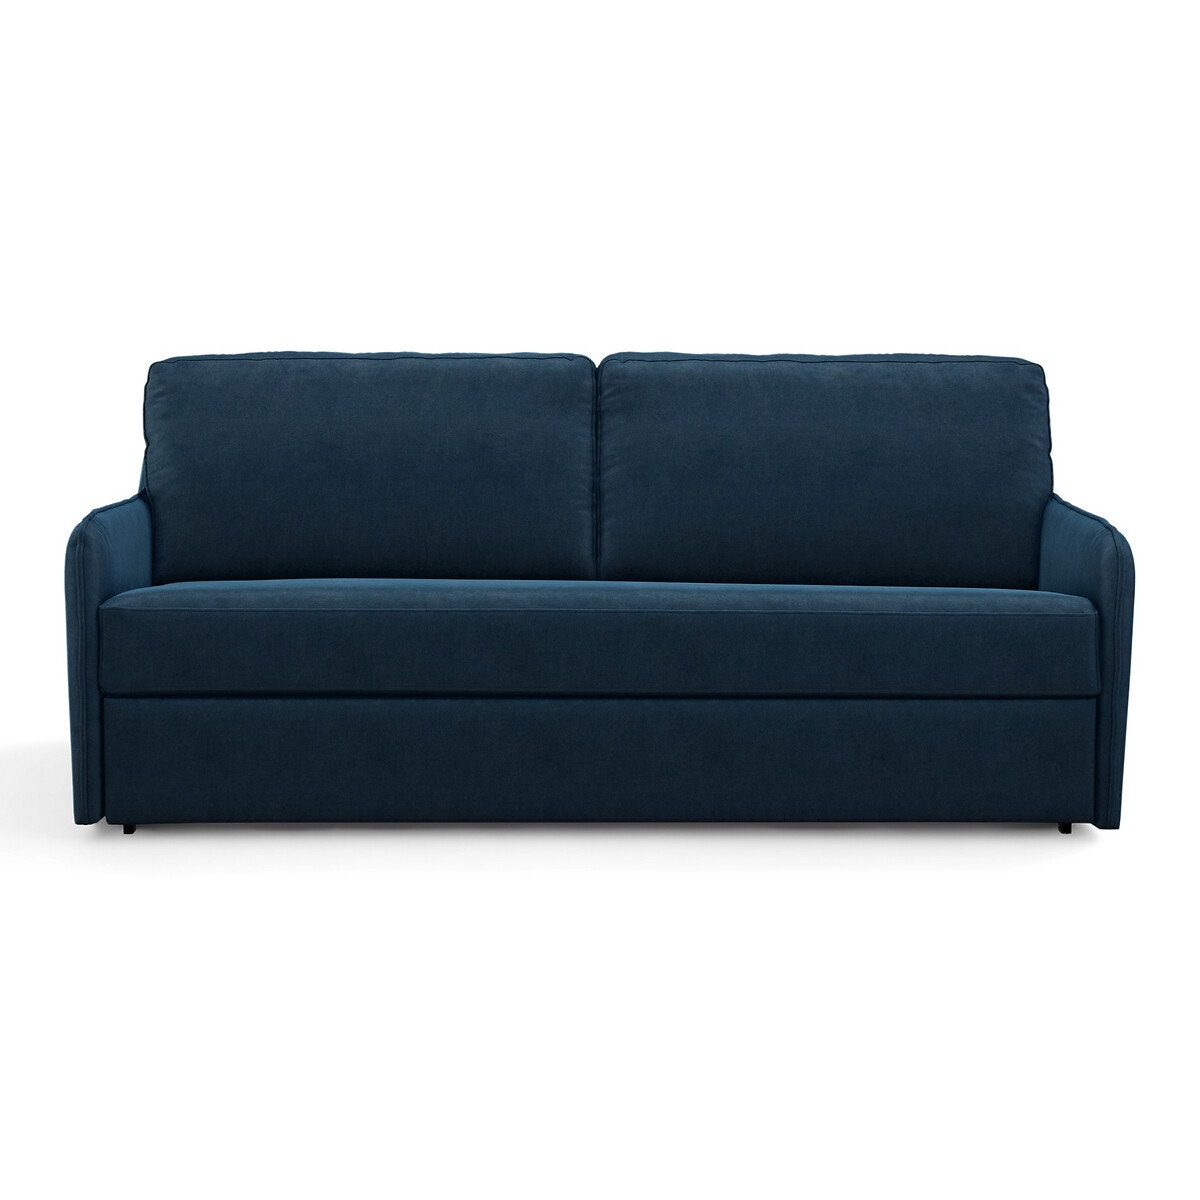 Καναπές-κρεβάτι από βελούδο με στρώμα τεχνολογίας Bultex, Nano